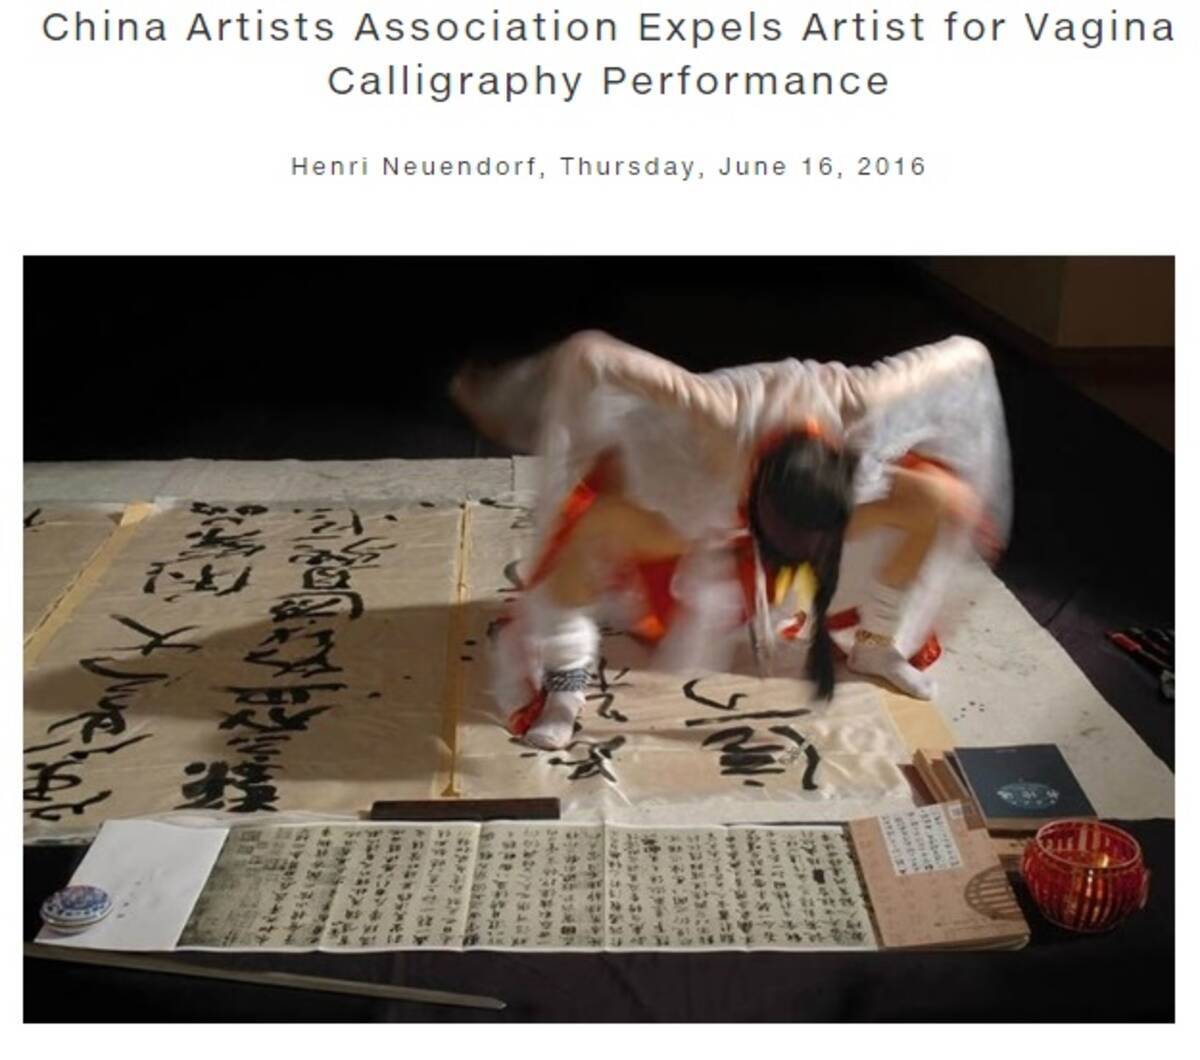 女性器に筆を挿して書道 中国美術家協会 ベテラン前衛芸術家を追放 16年6月日 エキサイトニュース